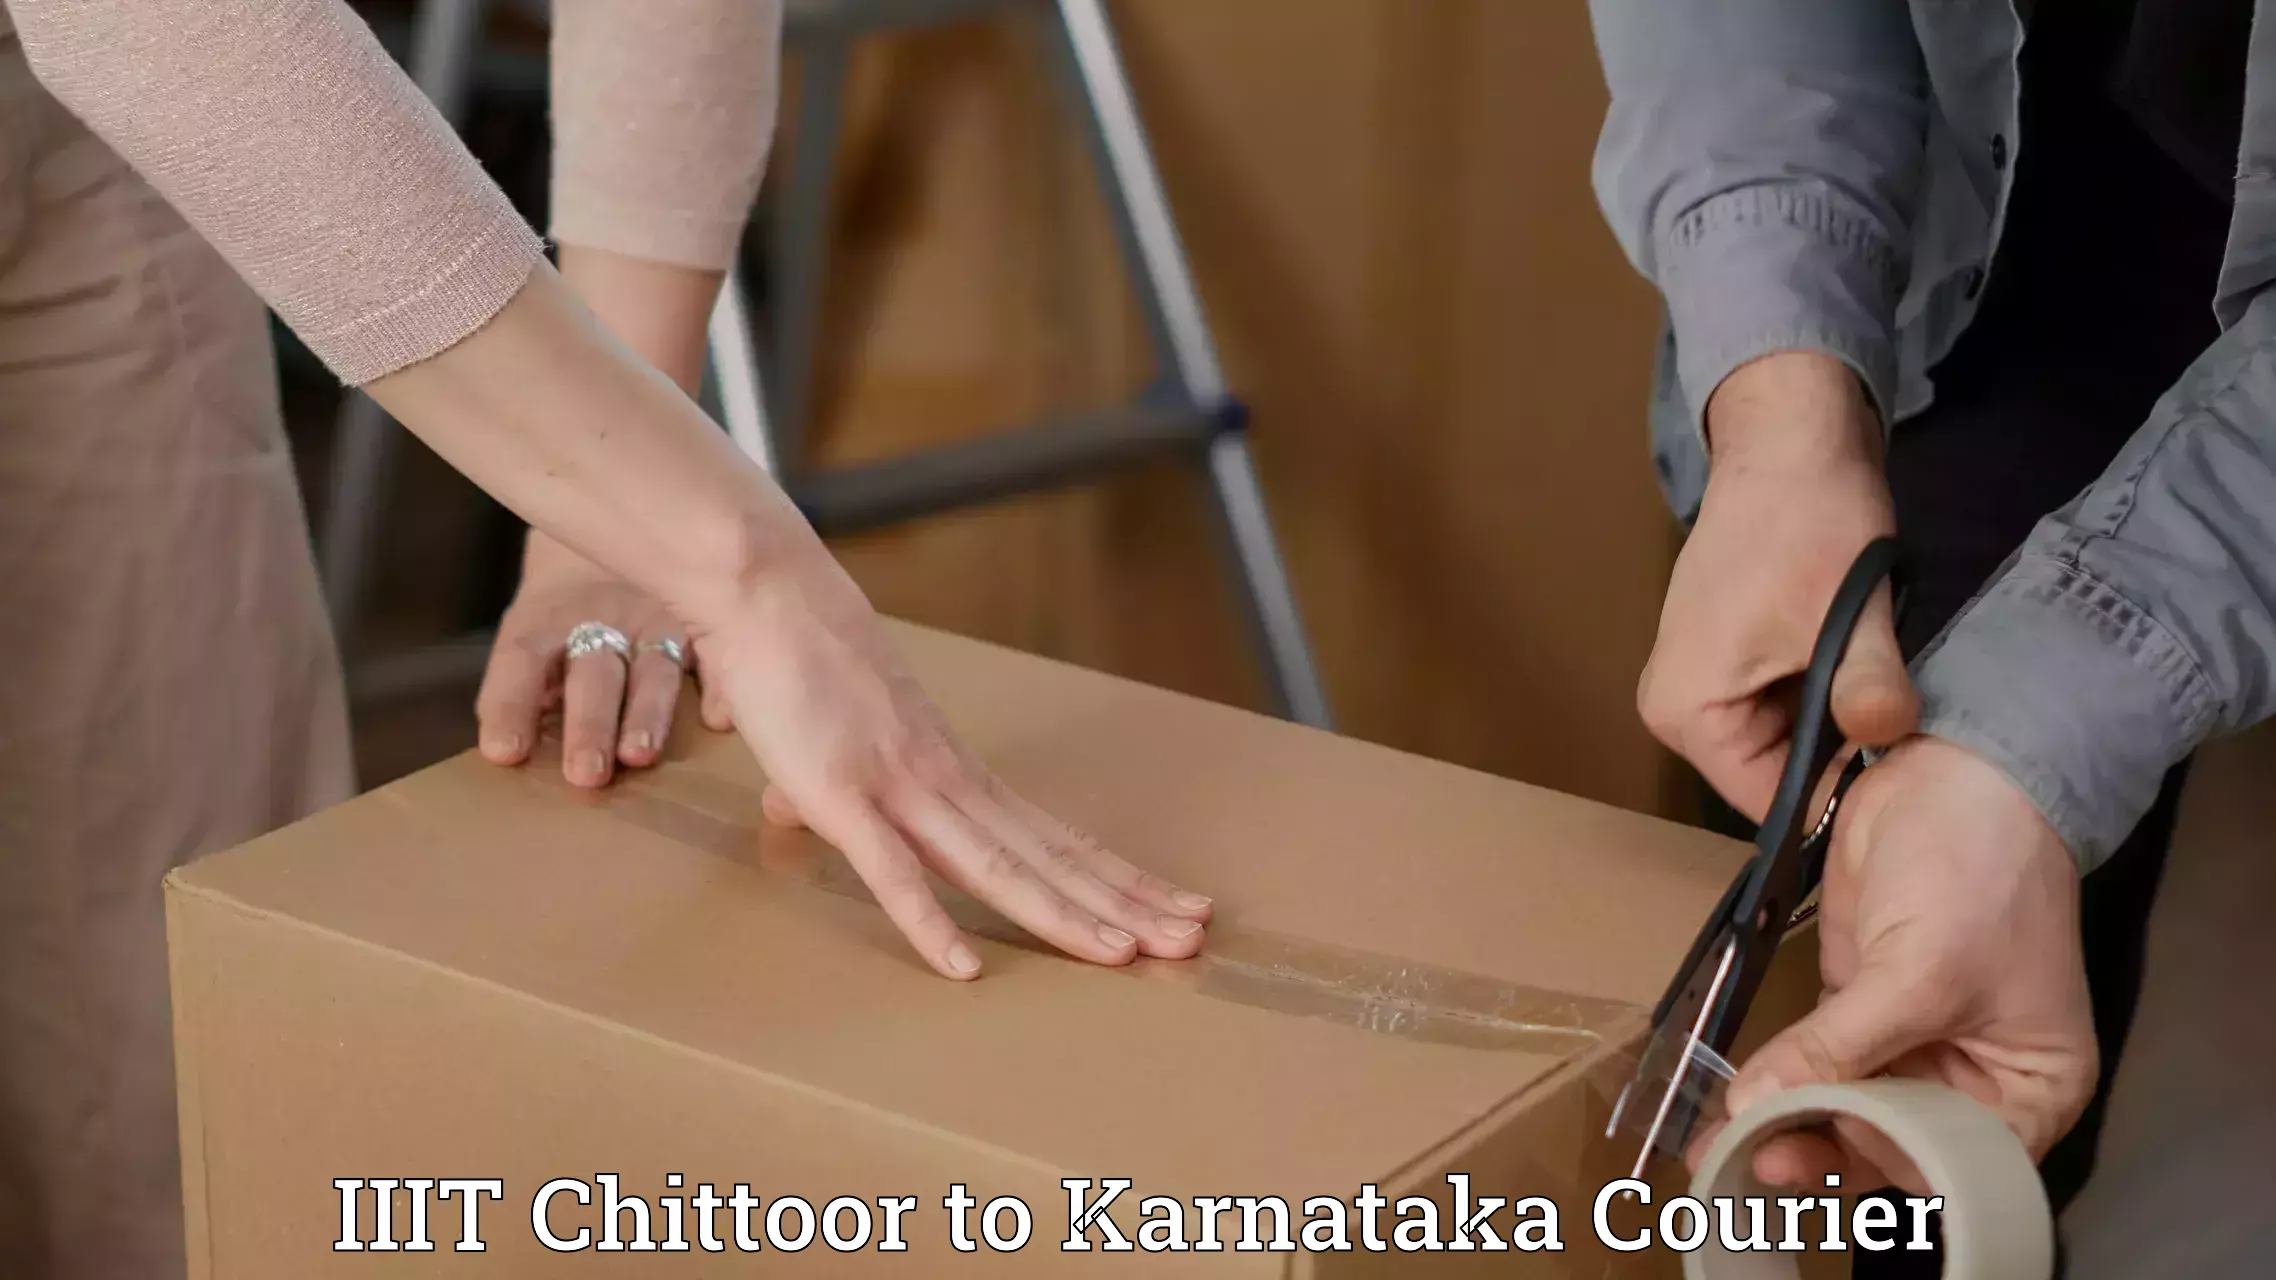 Local courier options in IIIT Chittoor to NIT Srinivasanagar